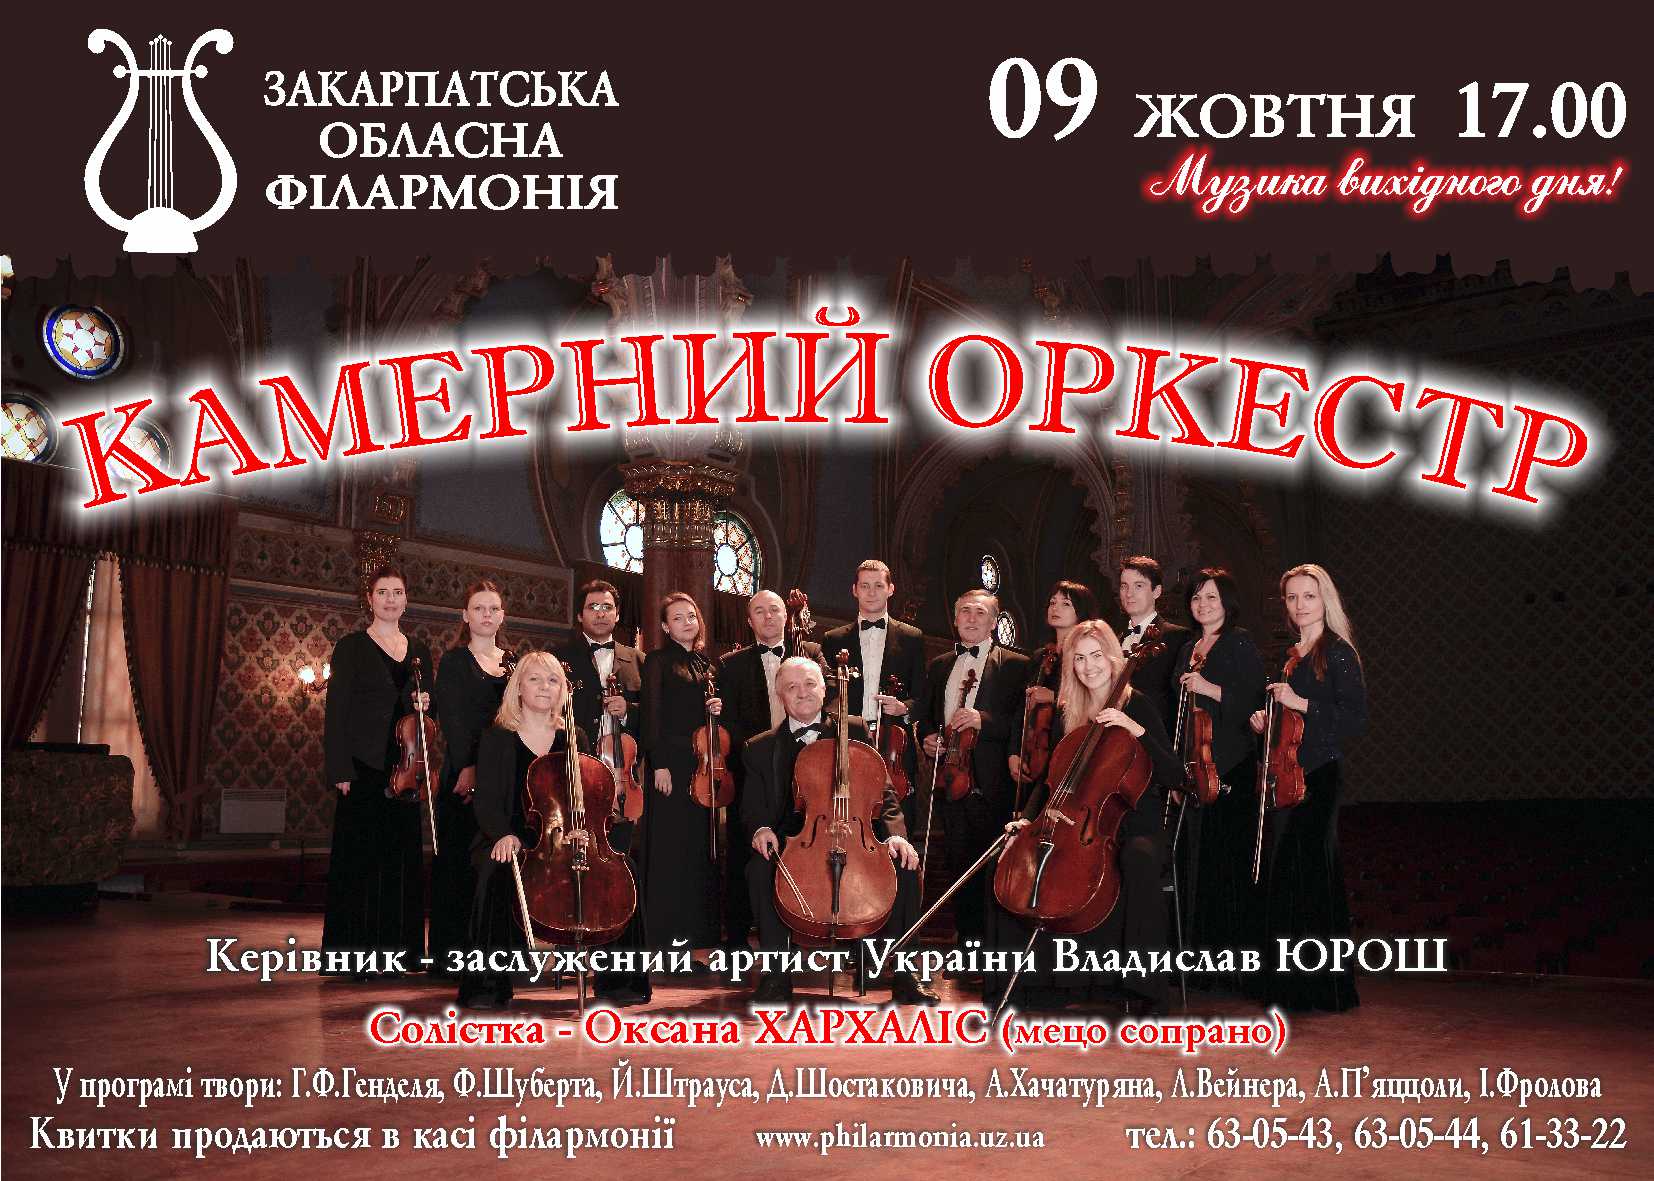 Проект «Музыка выходного дня» – серия воскресных концертов с участием ведущих исполнителей и коллективов Закарпатья.